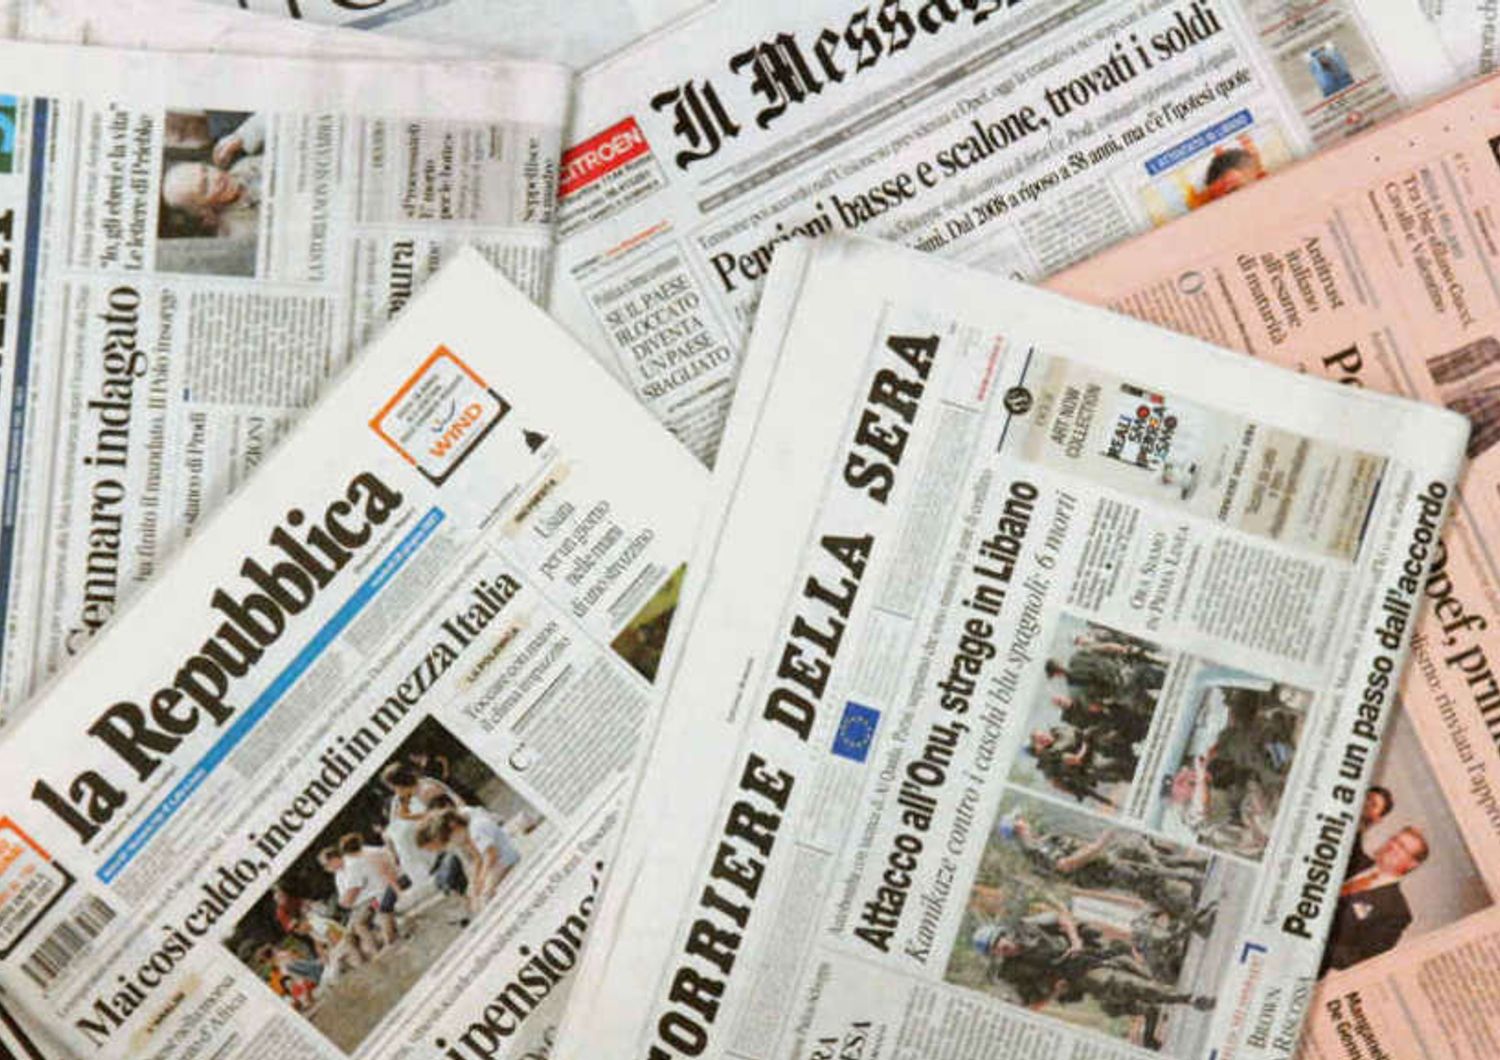 In 25 anni persi 3 milioni di copie di quotidiani, crescono i siti web